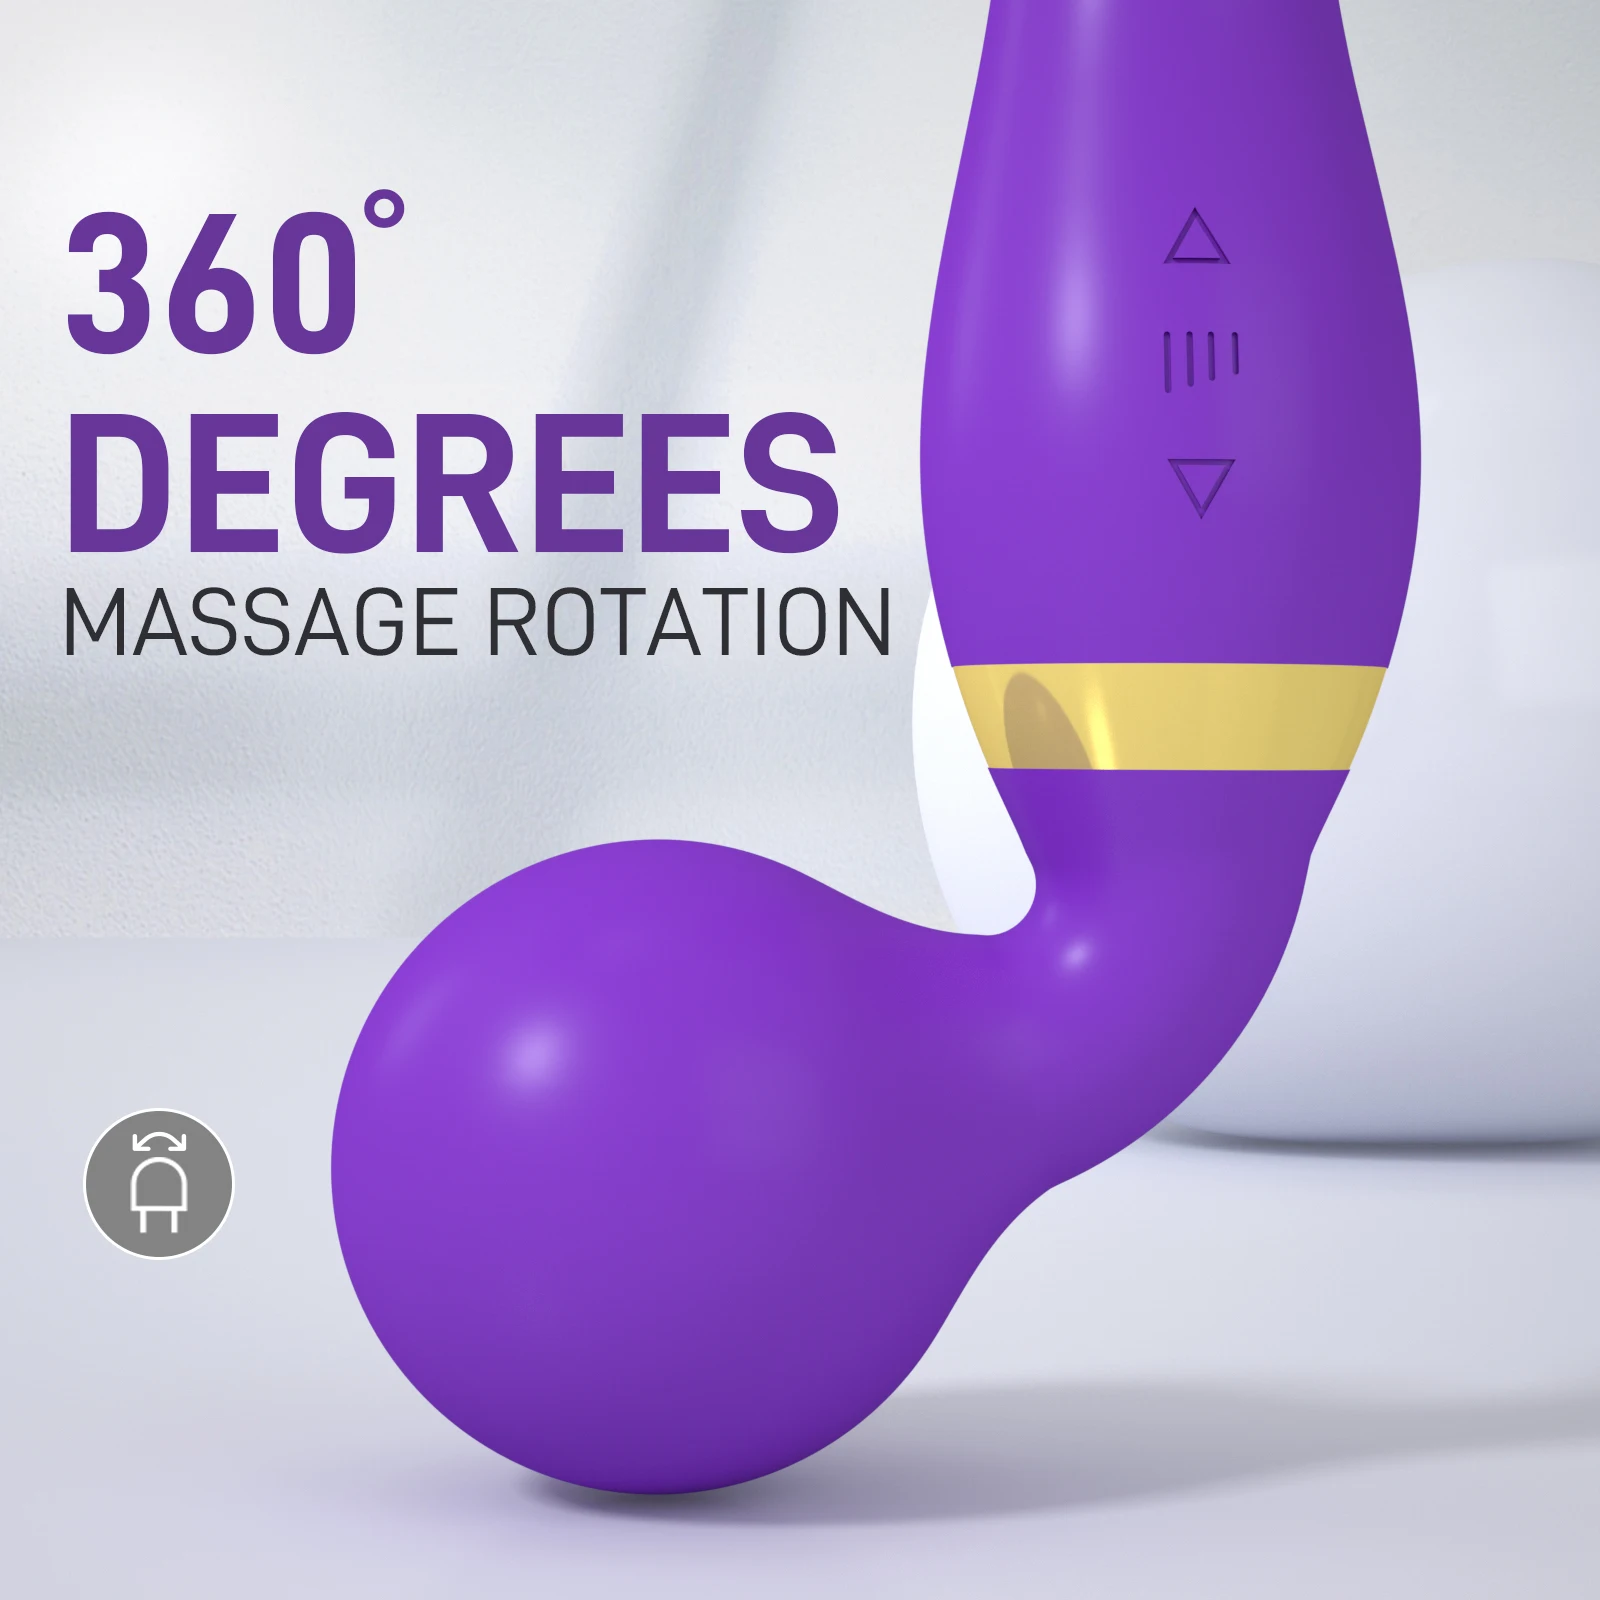 Magic Wand 20 Speeds Powerful Dildos Vibrator Dual Motor Large G-Spot AV Massager Clitoris Stimulator for Female Adults Sex Toys Vibrators cb5feb1b7314637725a2e7: black 2|Black-1|Purple 1|Purple 2|red-1|Red-2